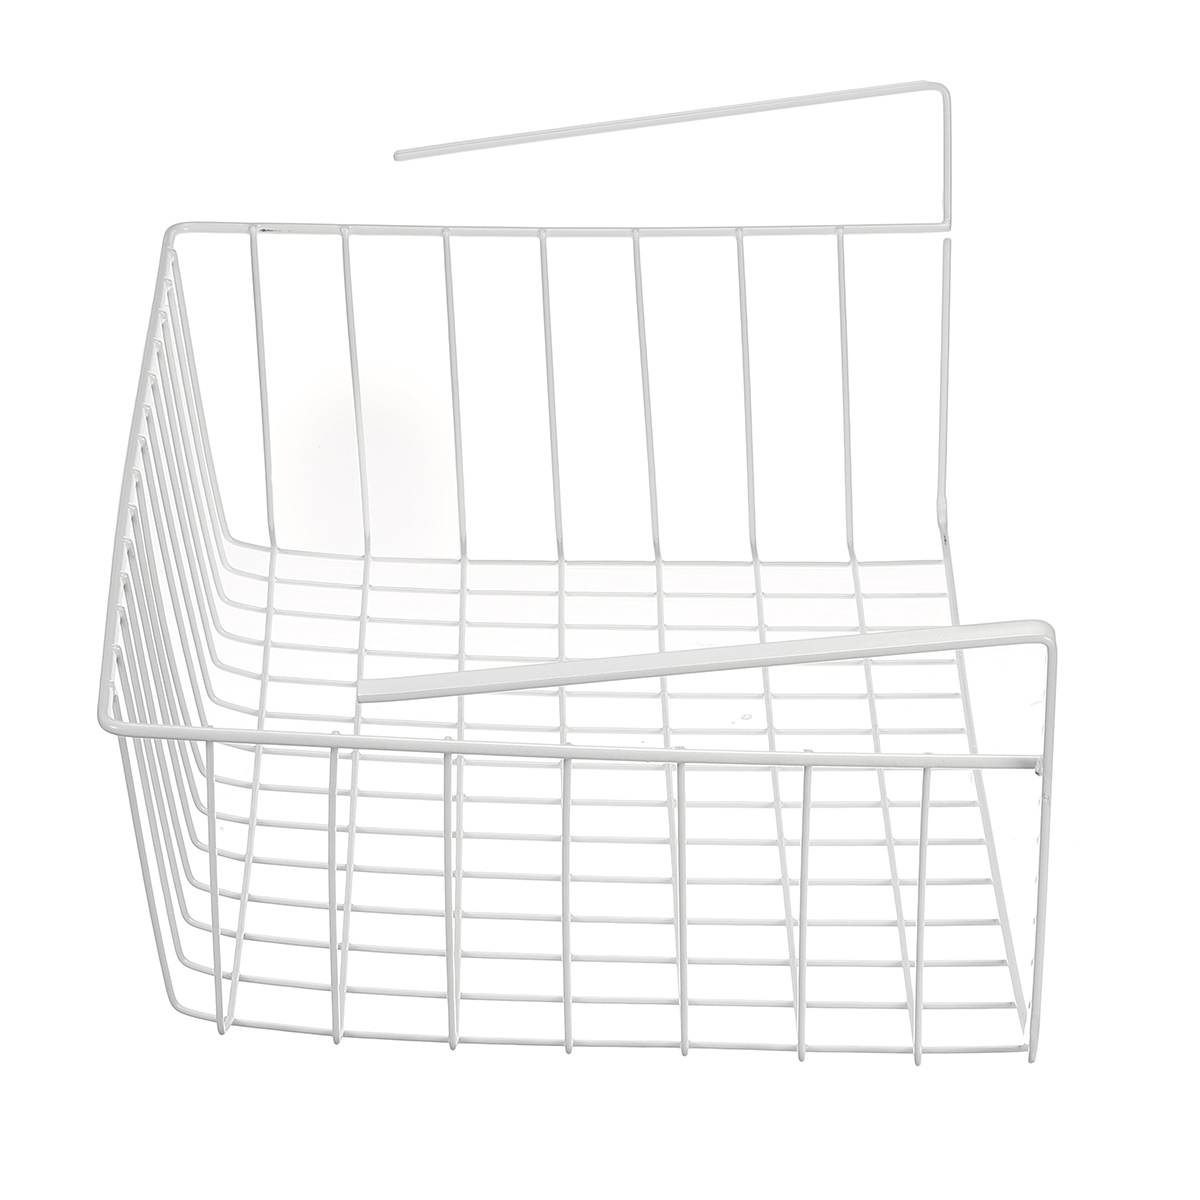 Under-Shelf-Storage-Hanging-Rack-Kitchen-Holder-Basket-Table-Cabinet-Organizer-1703470-8